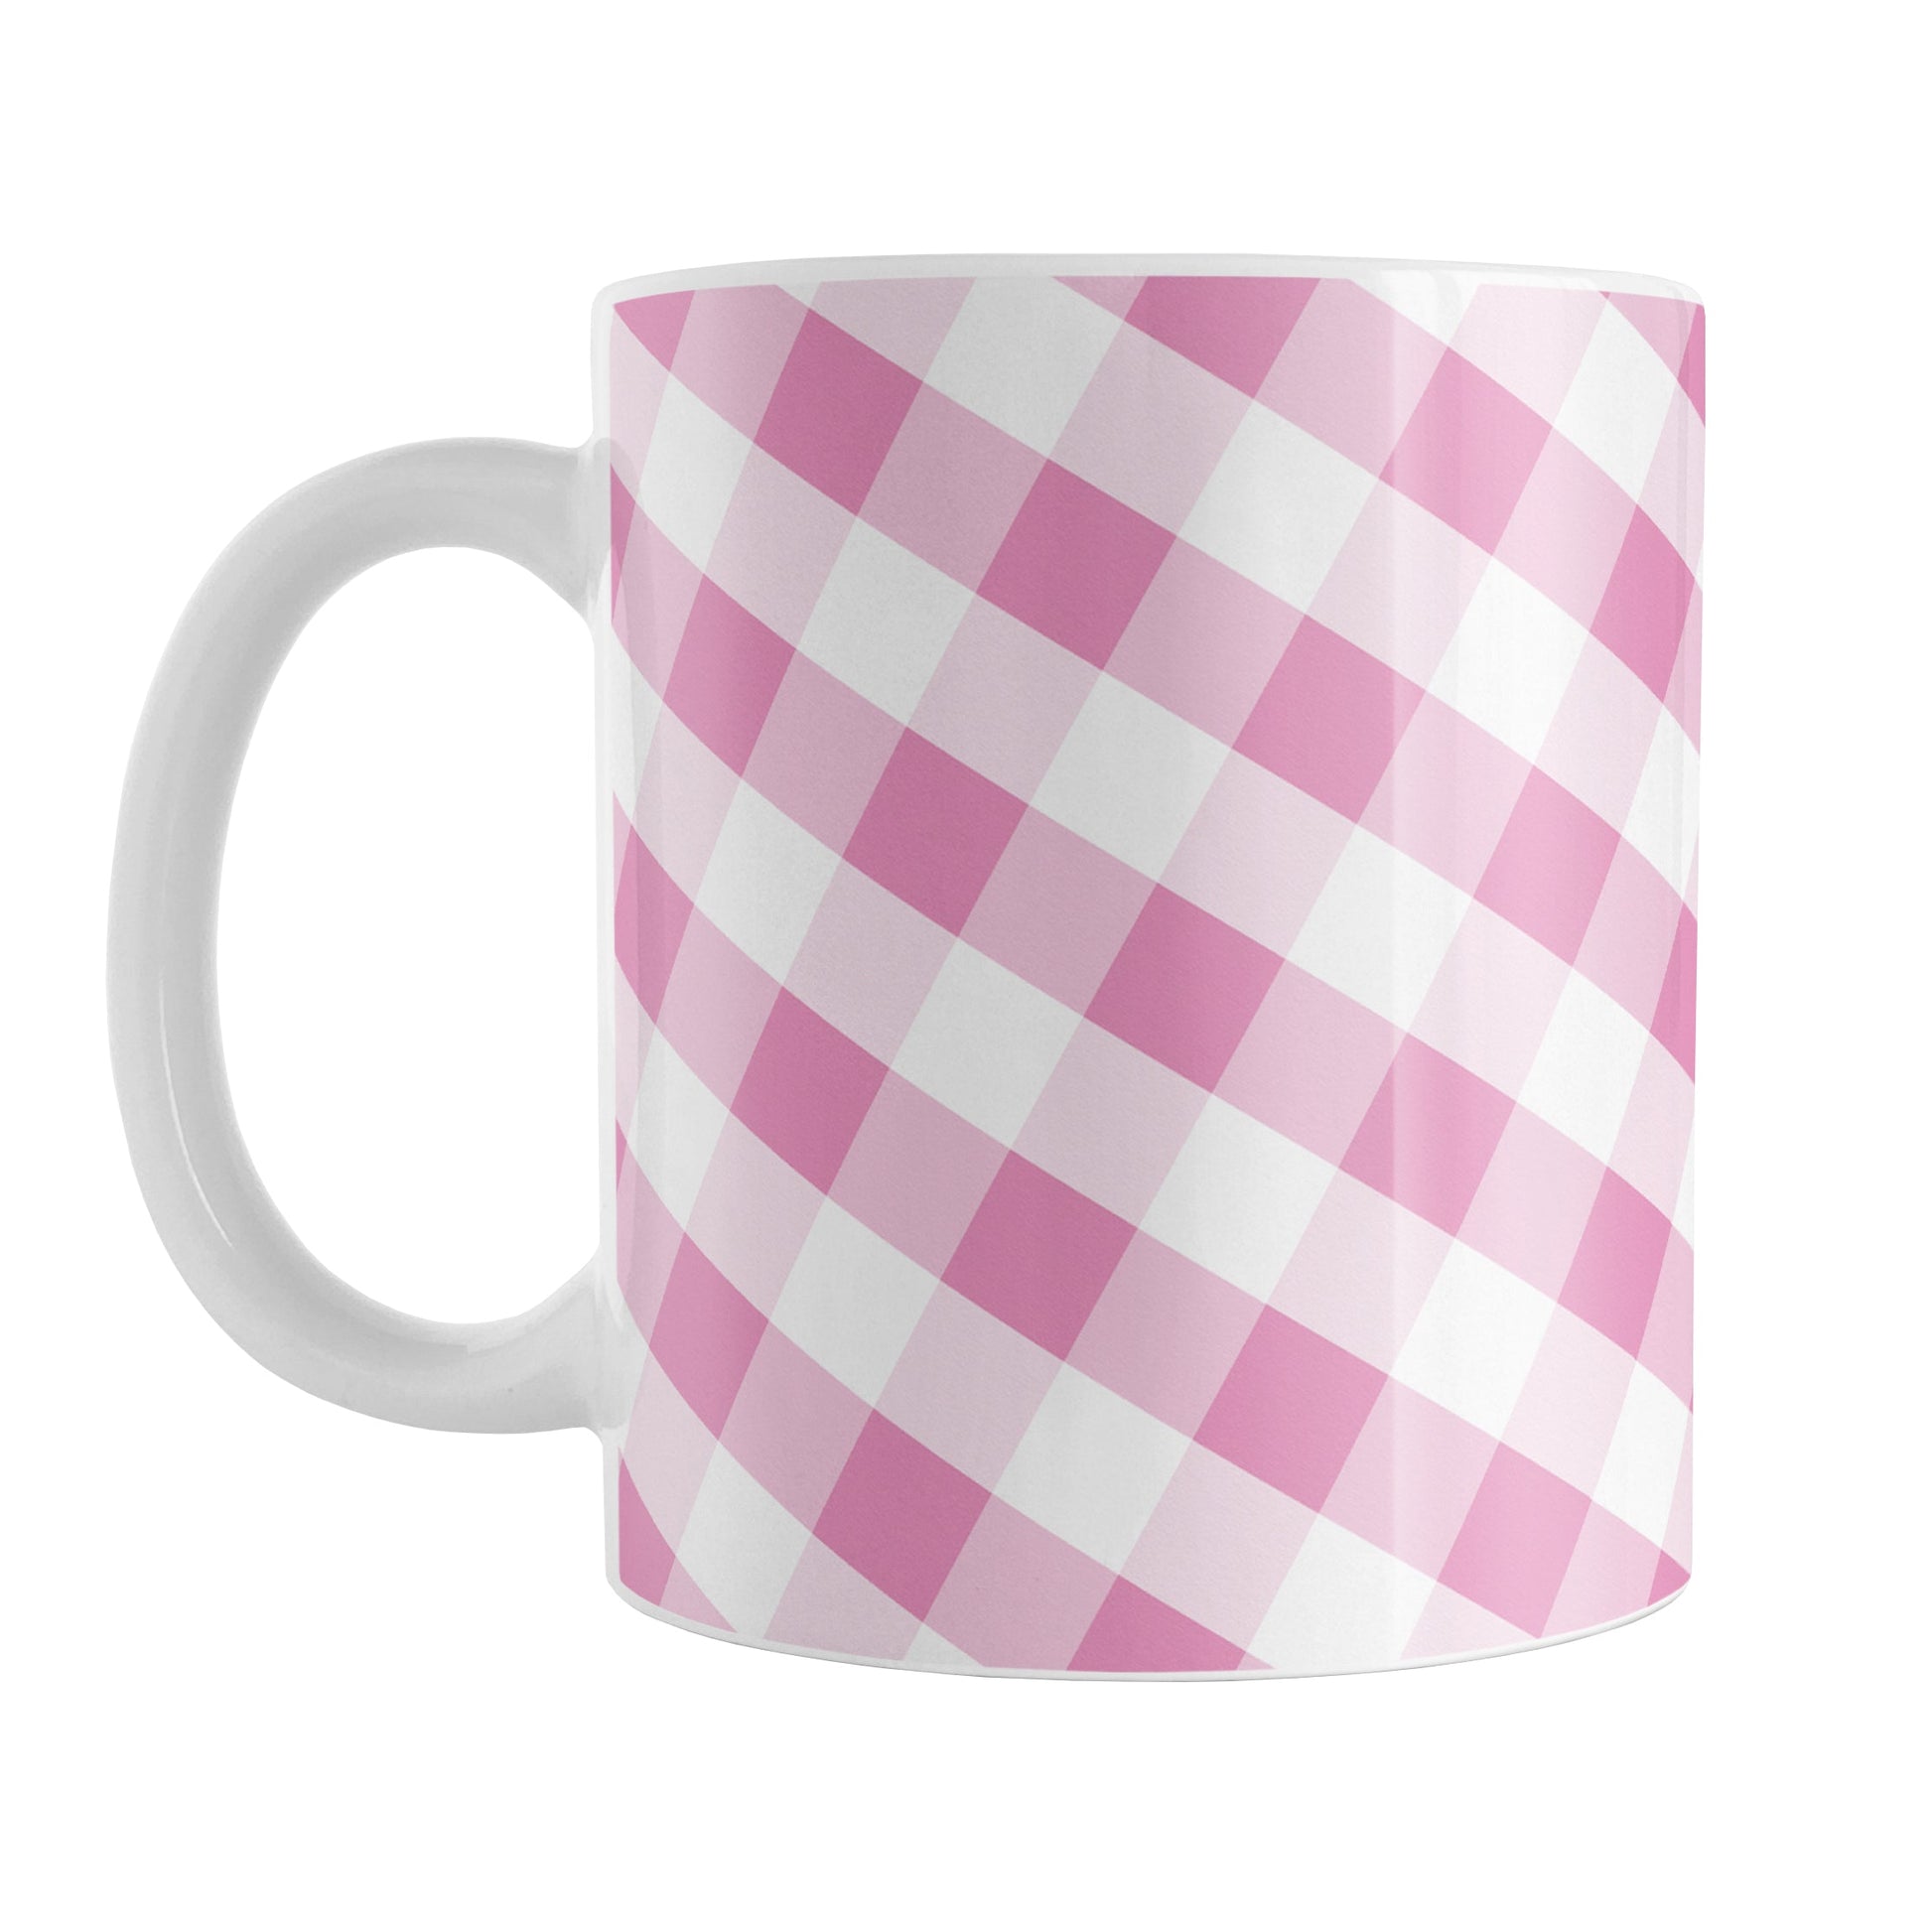 Pink Gingham Mug (11oz) at Amy's Coffee Mugs